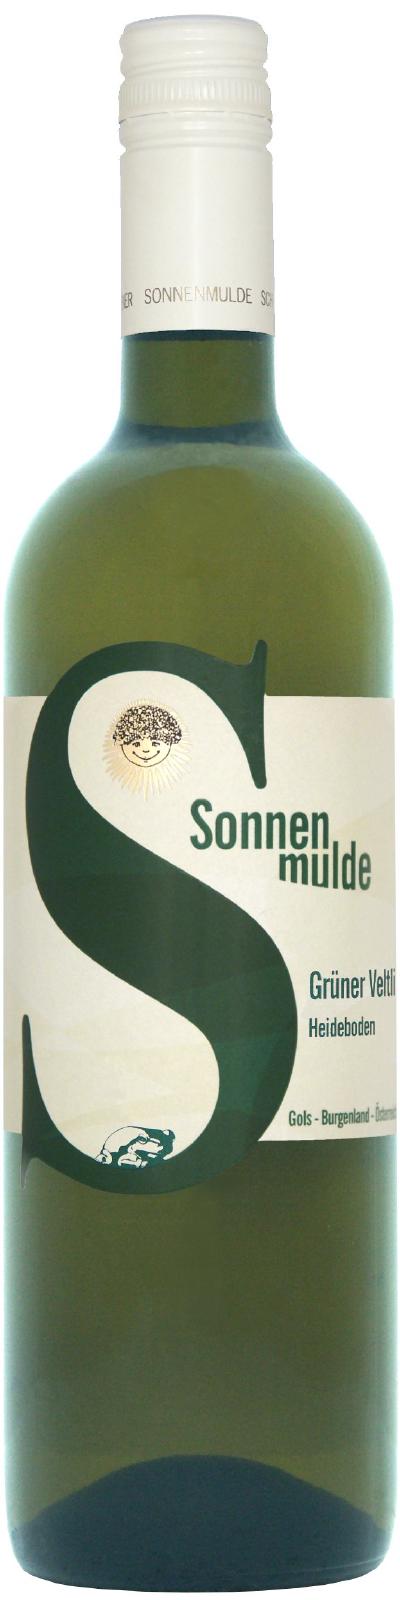 A bottle of Grüner Veltliner Heideboden